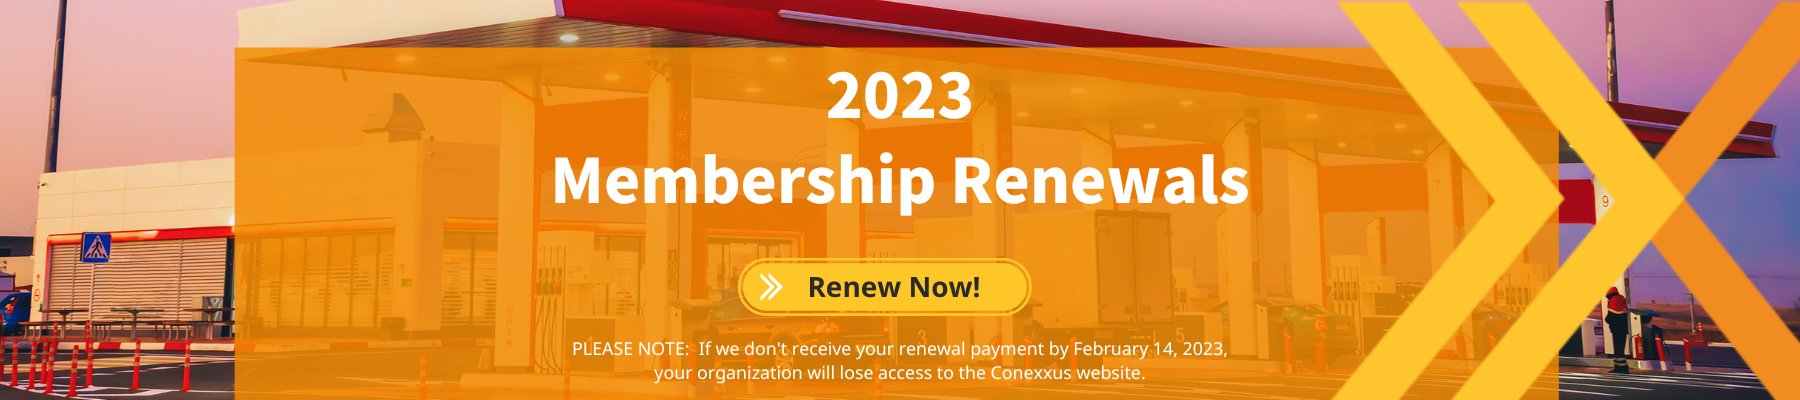 2023 Membership Renewals